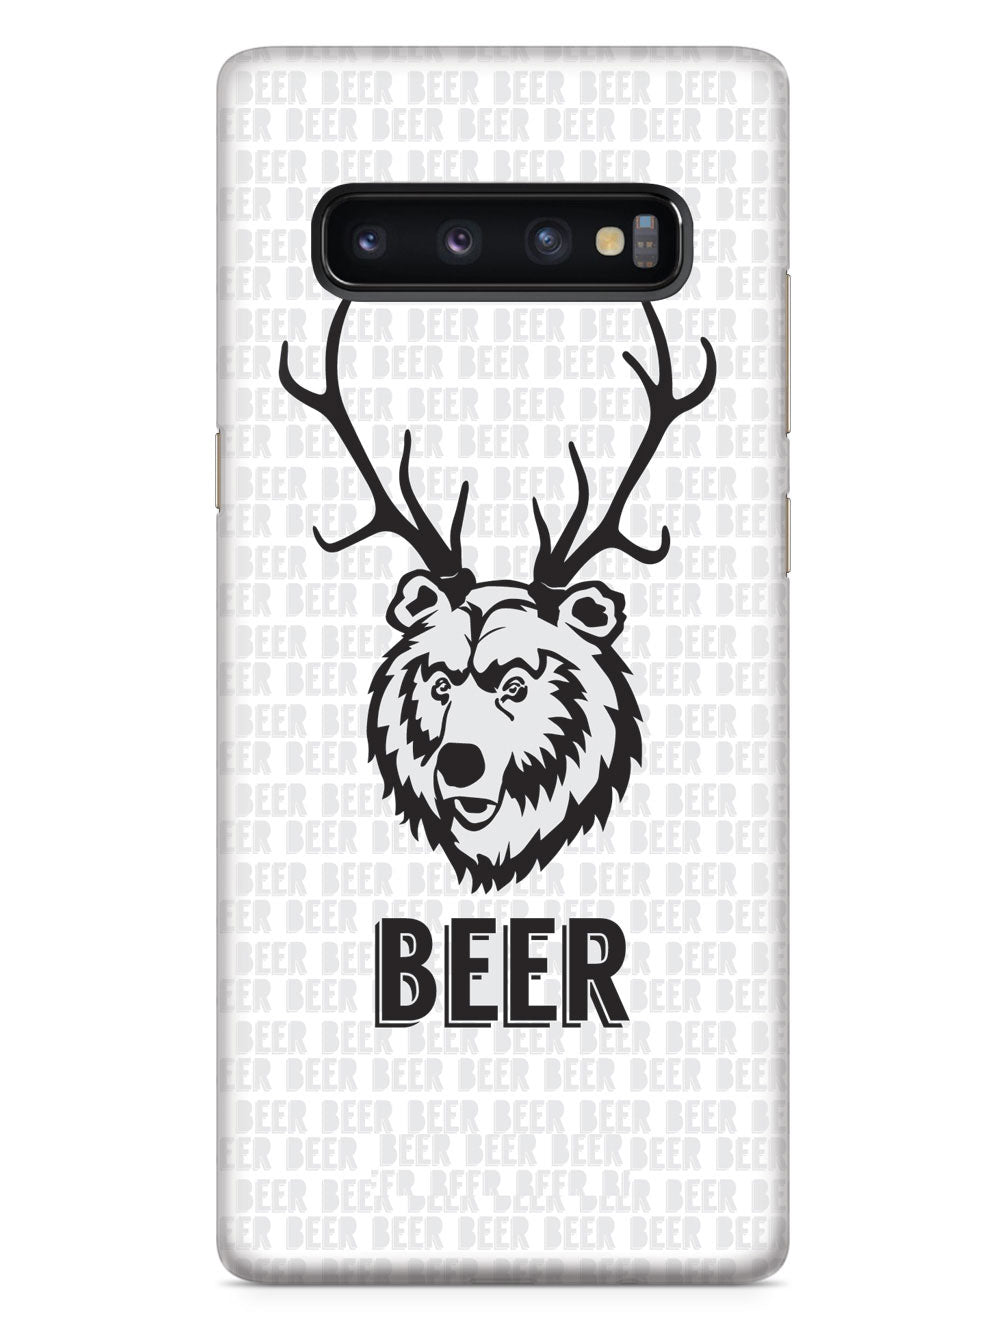 Bear + Deer = Beer Humor Funny Case